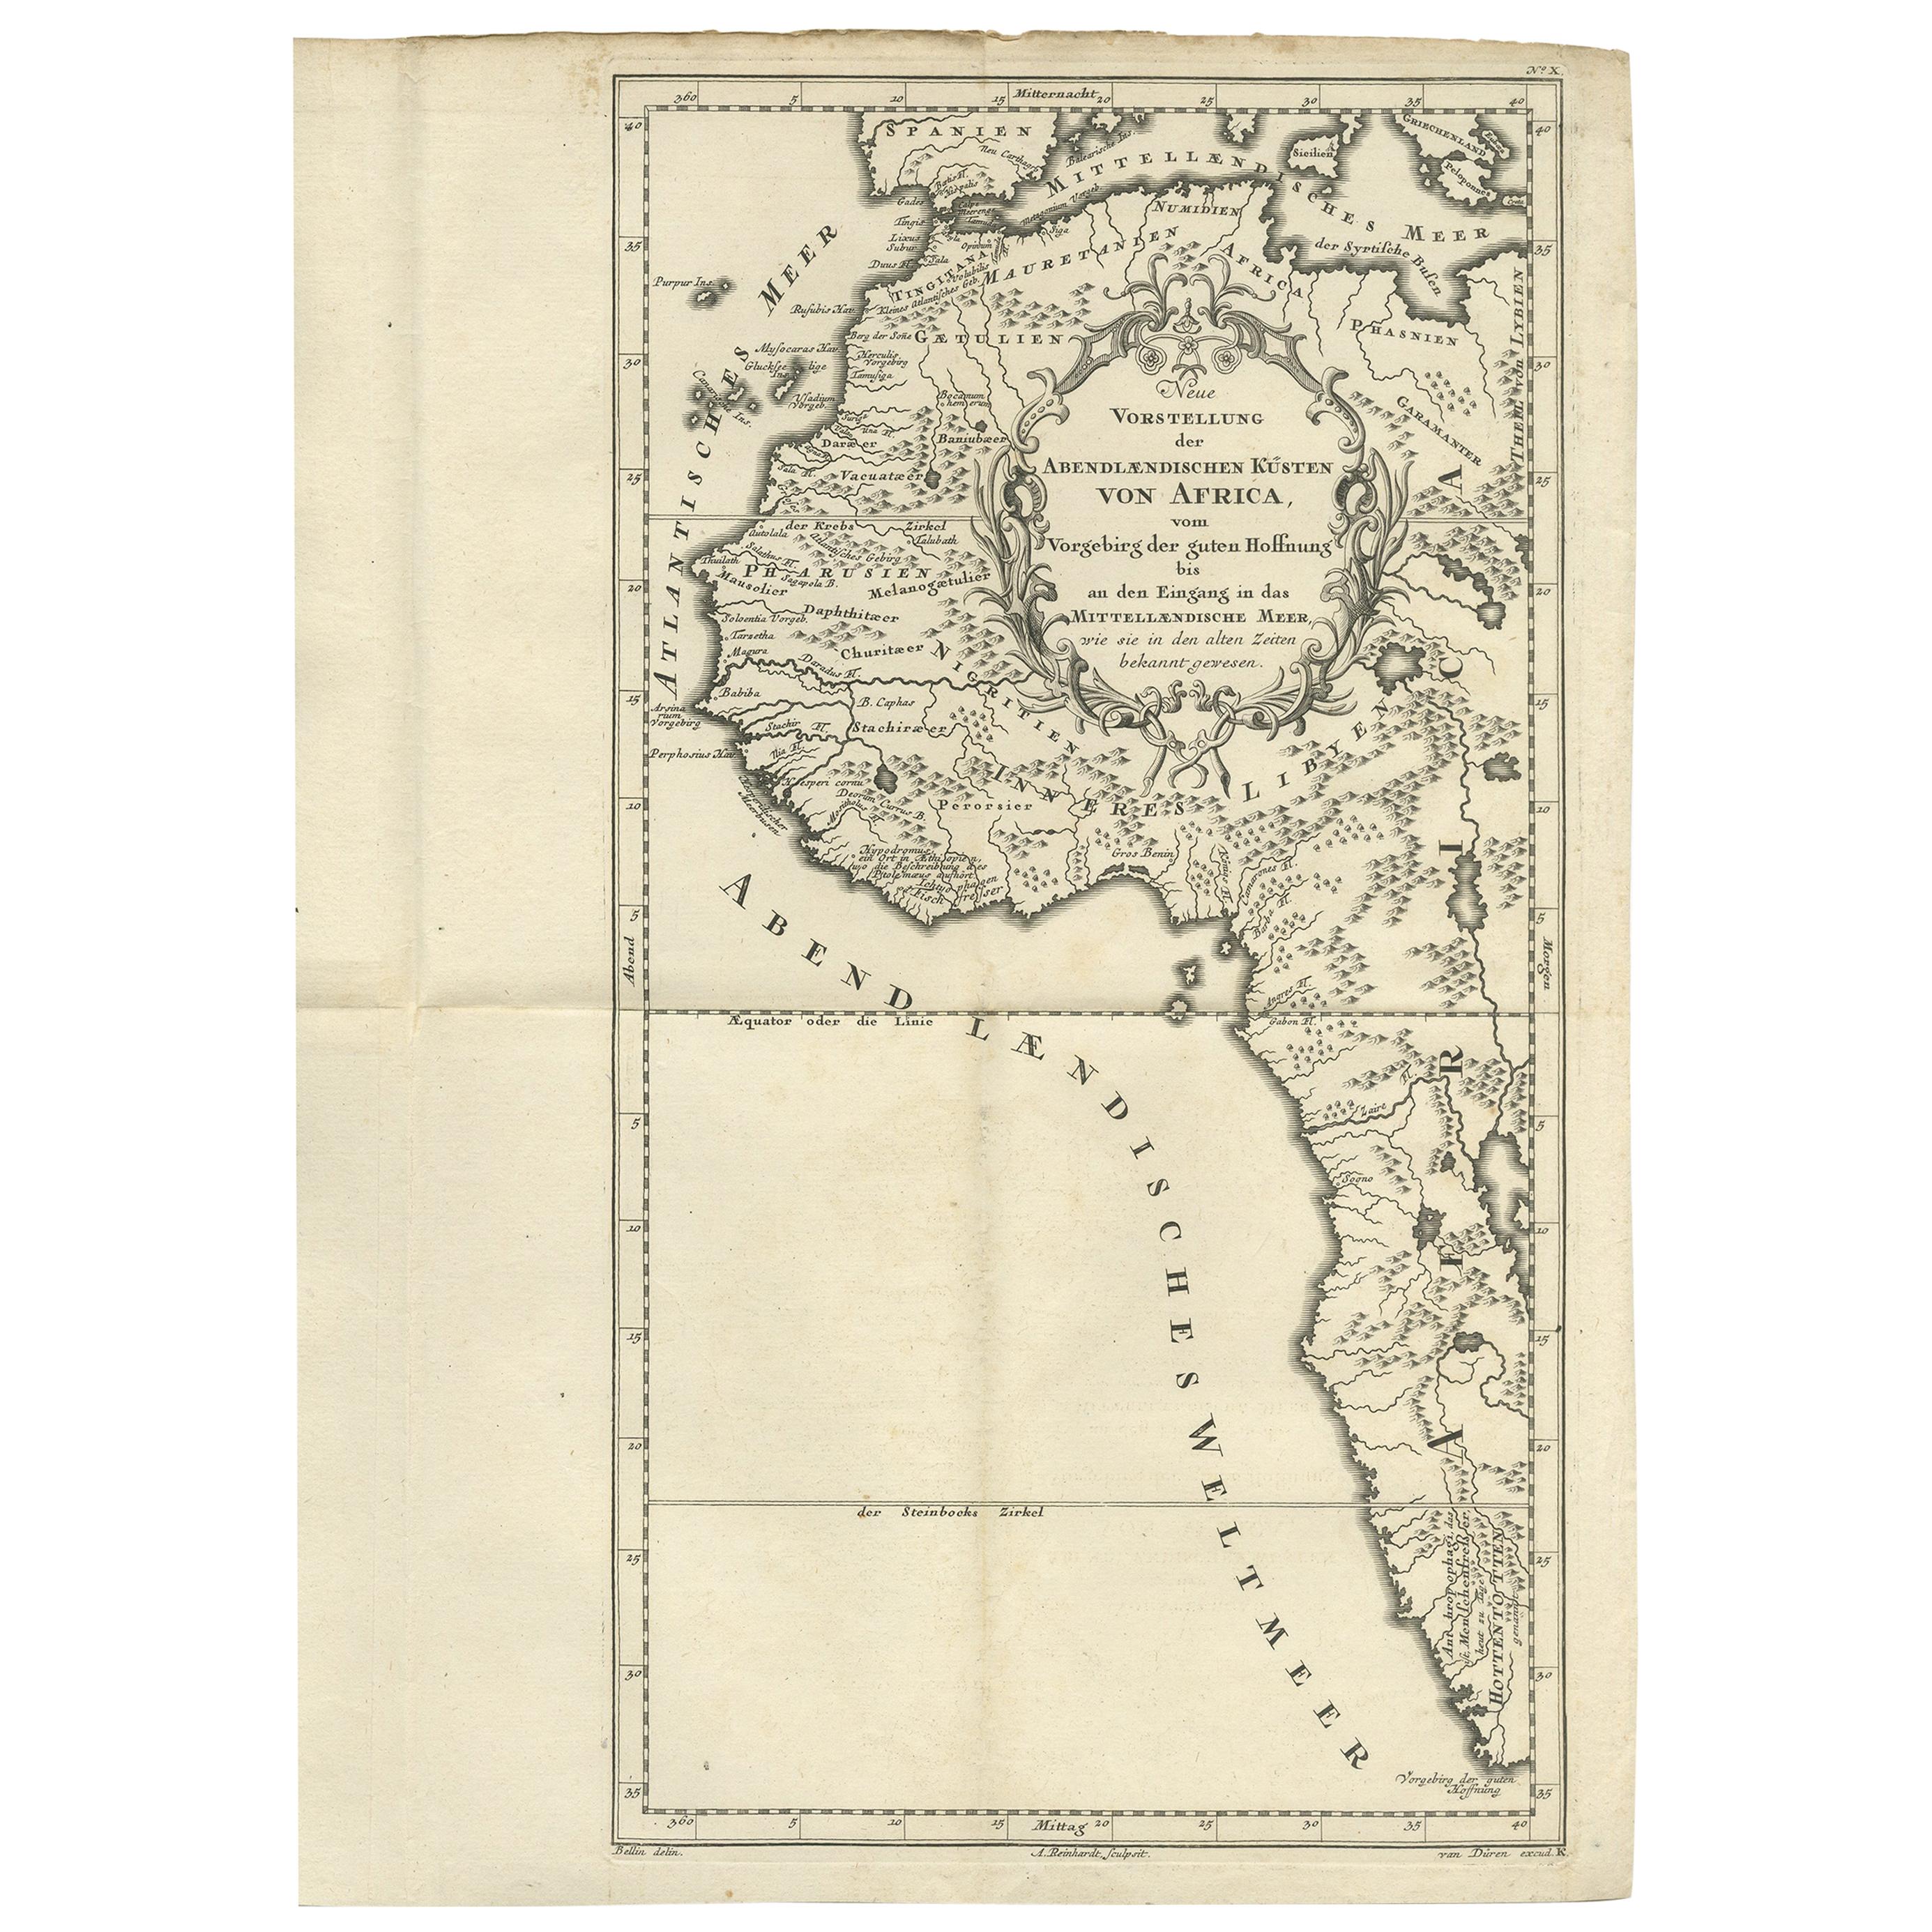 Originale antikecoulorierte Originalkarte von Westafrika, 1749